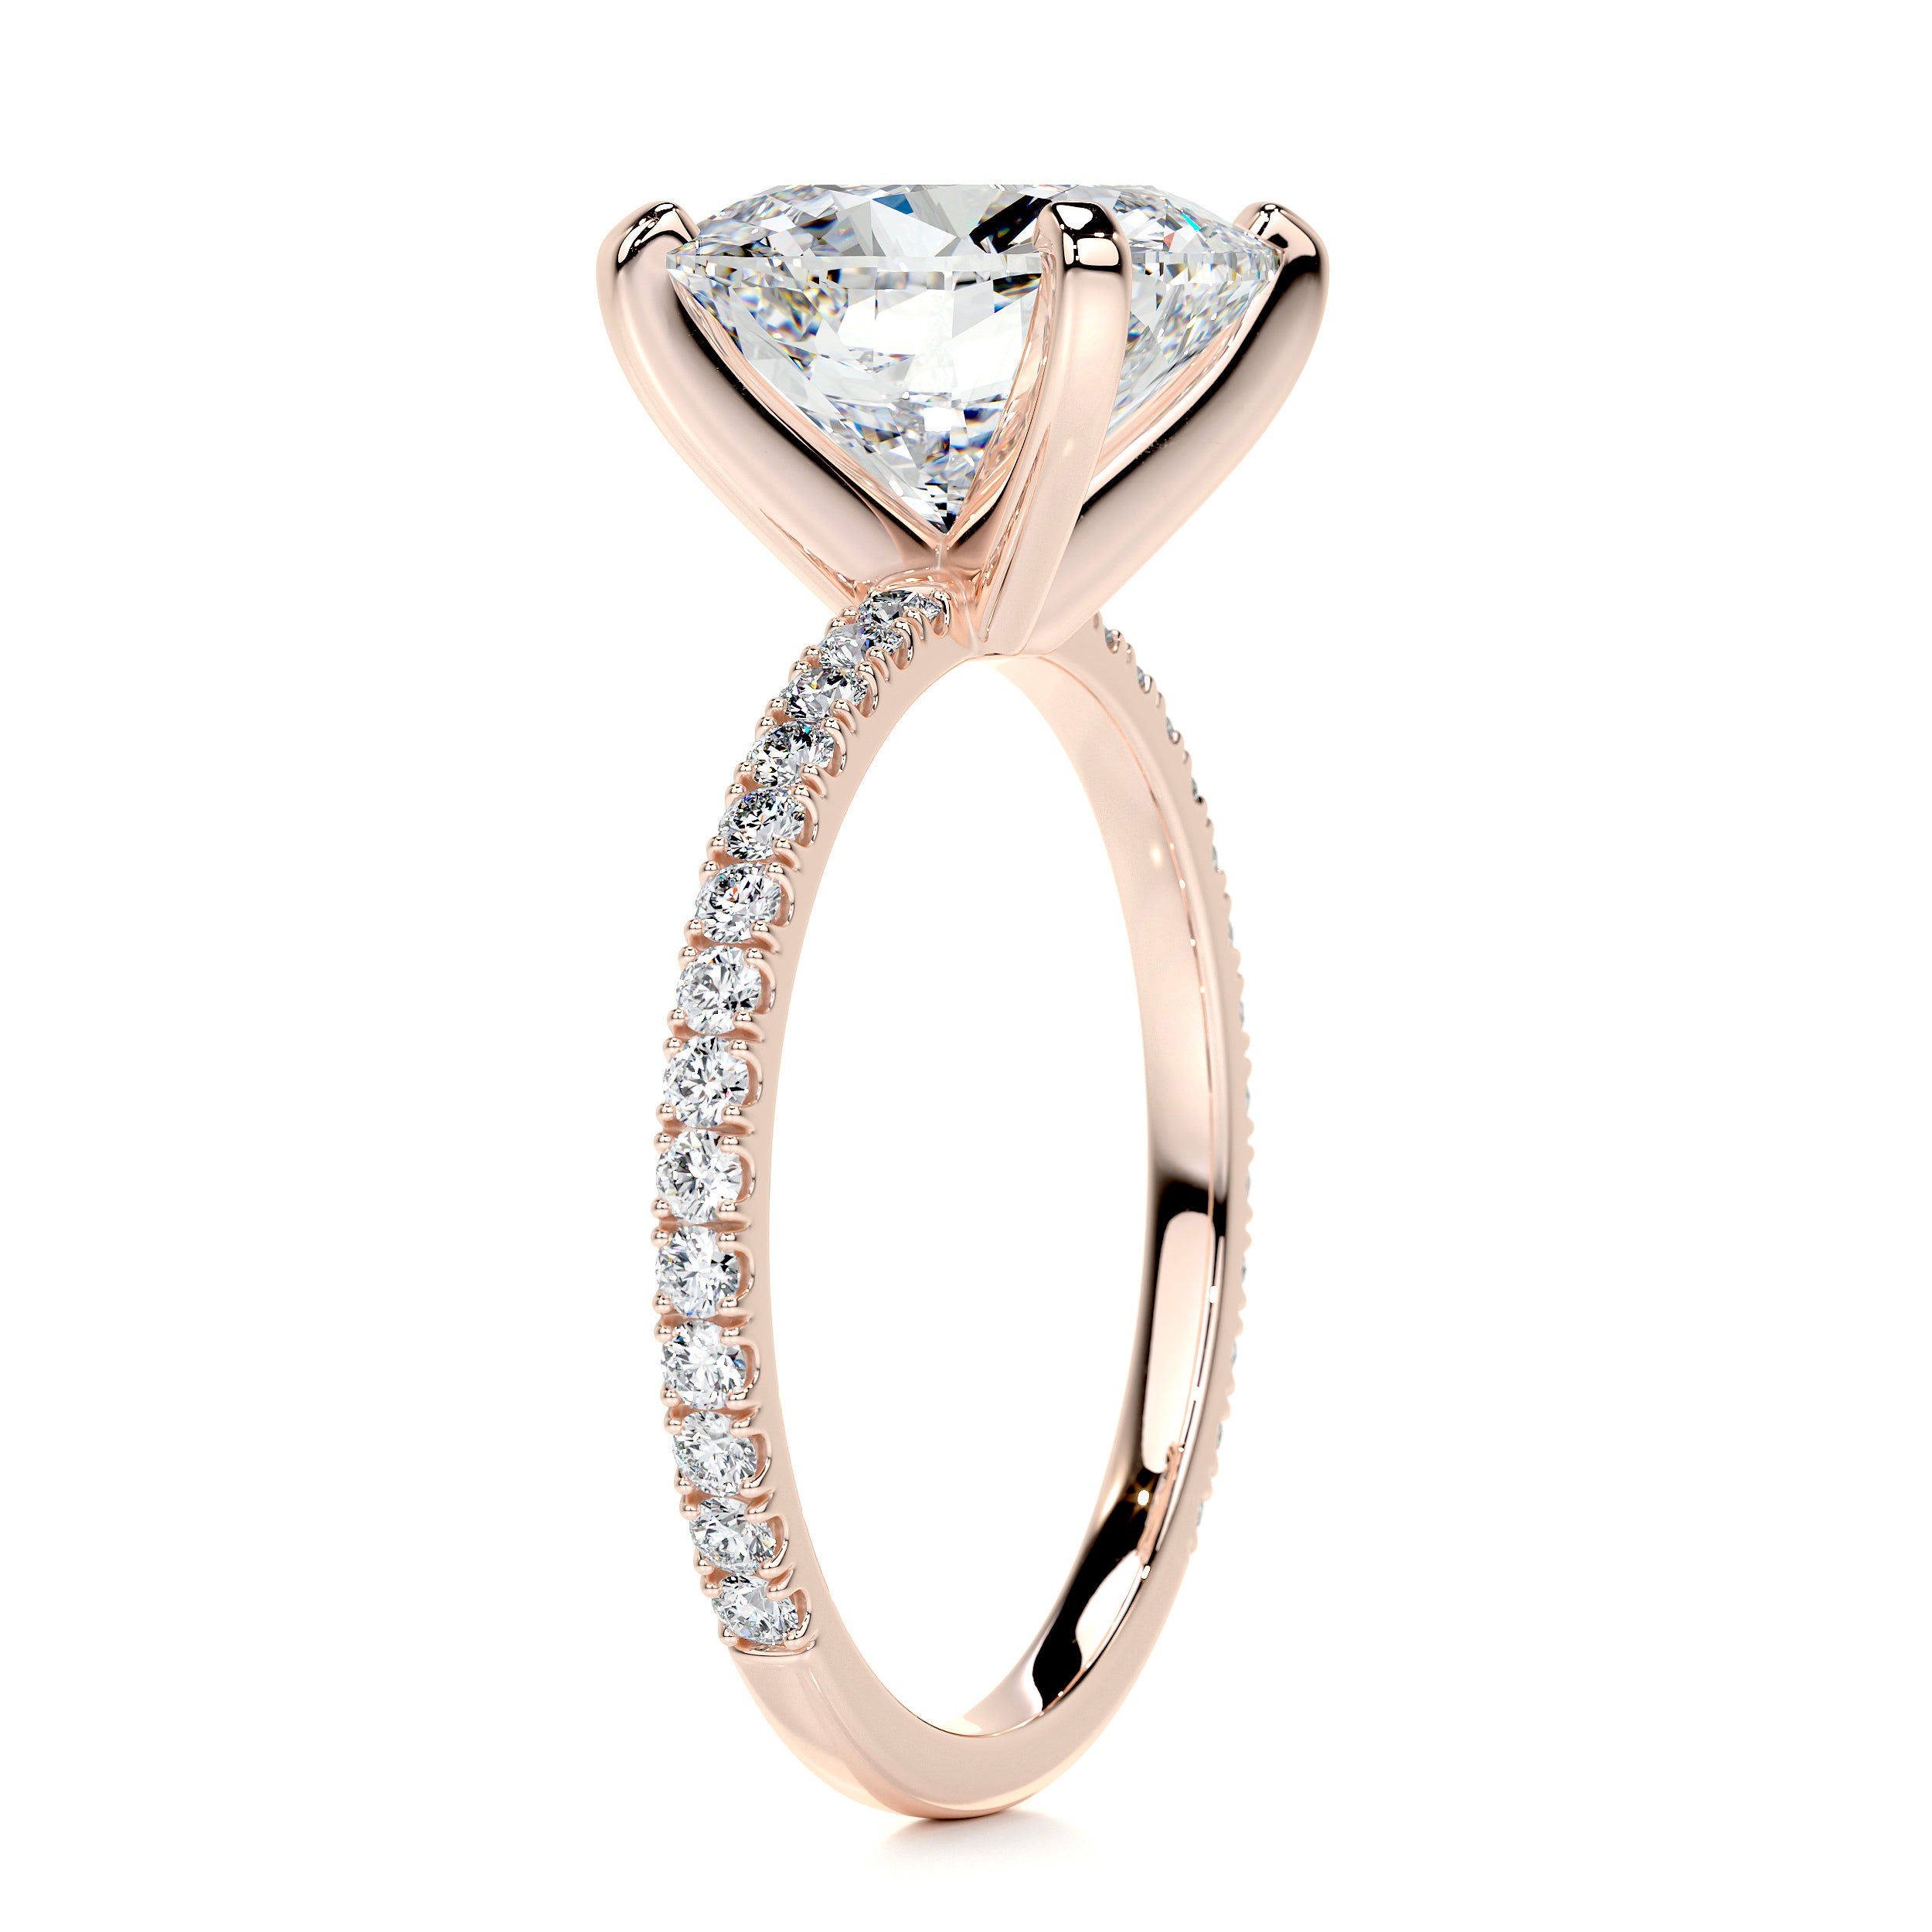 Stephanie Moissanite & Diamonds Ring   (4.5 Carat) -14K Rose Gold